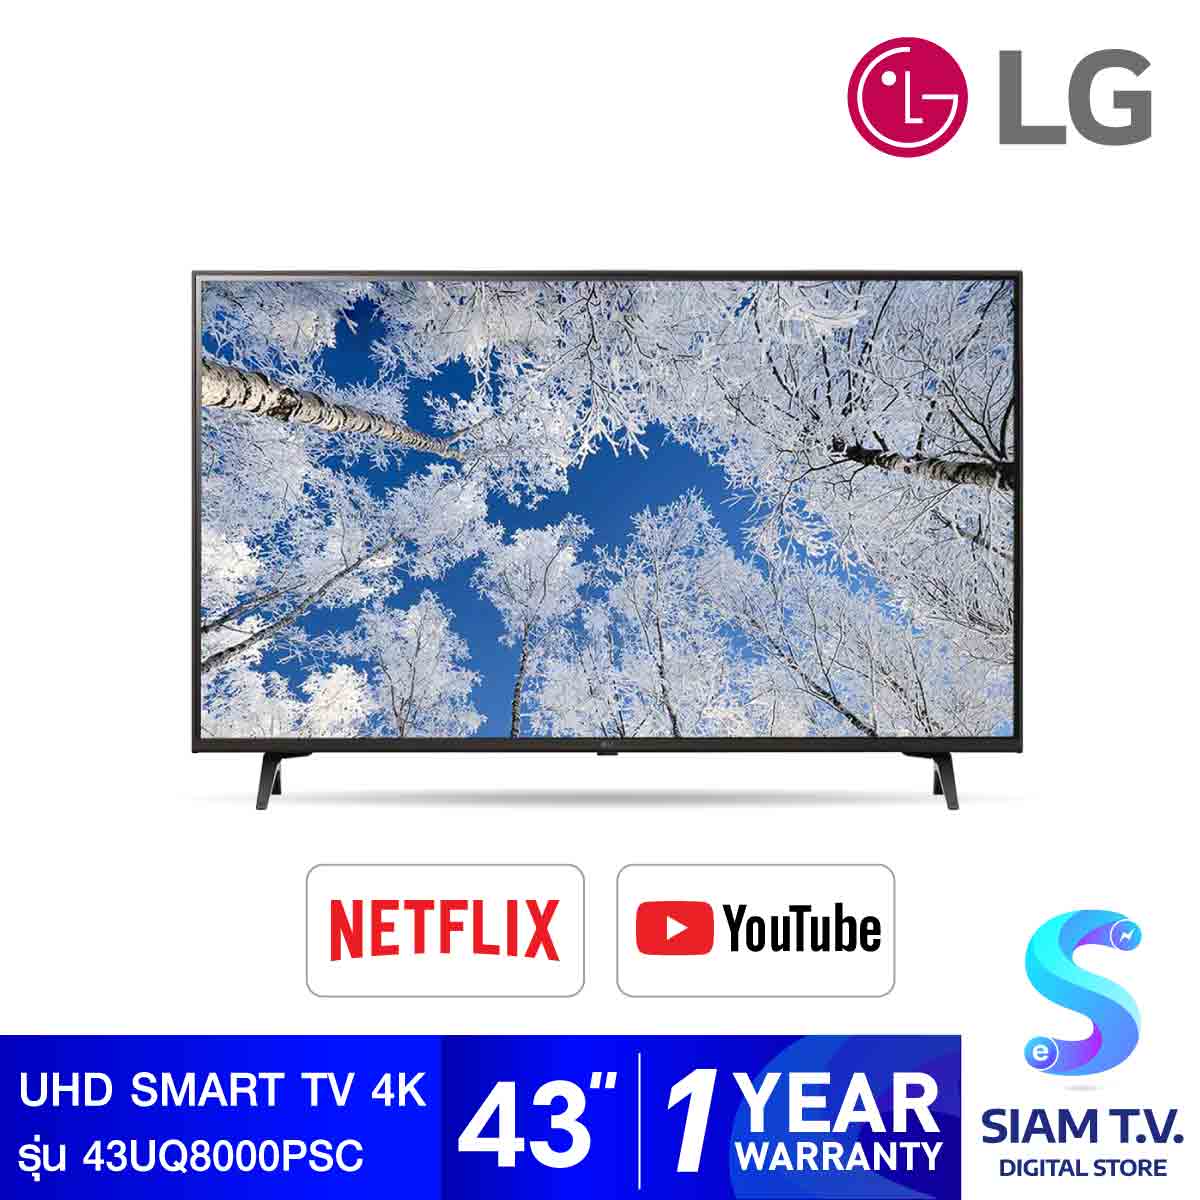 โปรโมชั่น Flash Sale : LG UHD TV 4K Smart TV รุ่น 43UQ8000PSC สมาร์ททีวี 43 นิ้ว MAGIC REMOTE โดย สยามทีวี by Siam T.V.